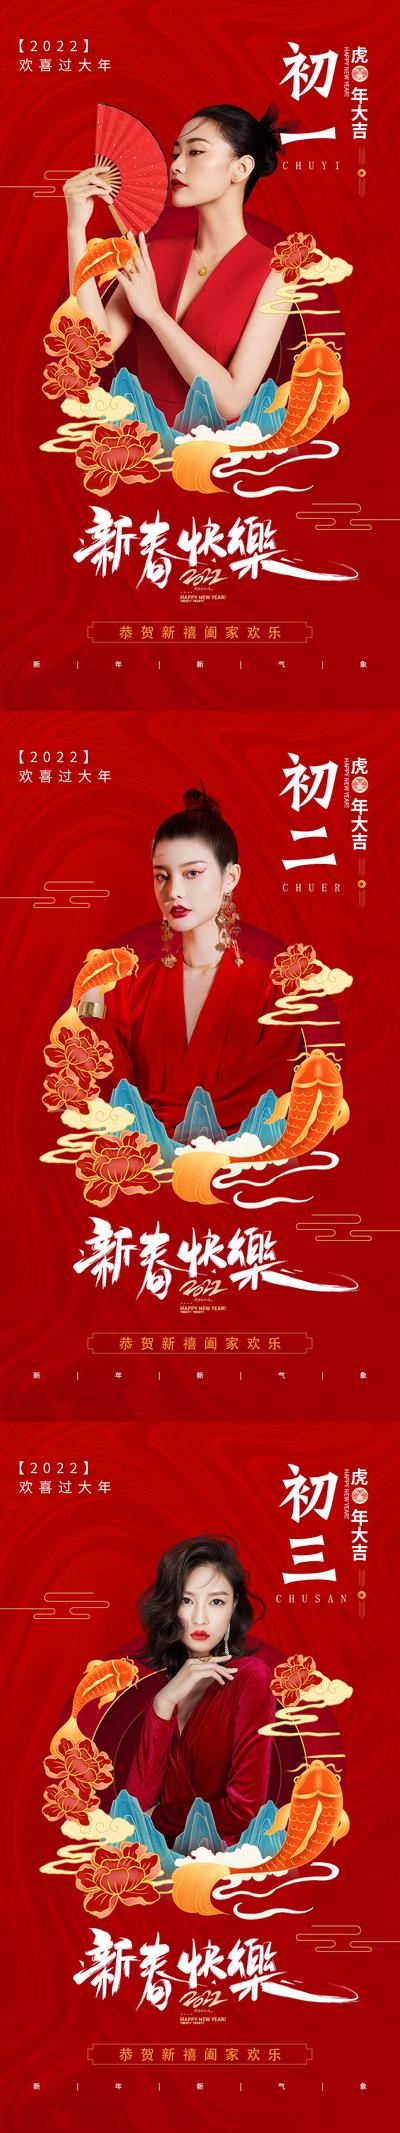 南门网 海报 医美  中国传统节日 新年 除夕 初一 初二 新春 人物